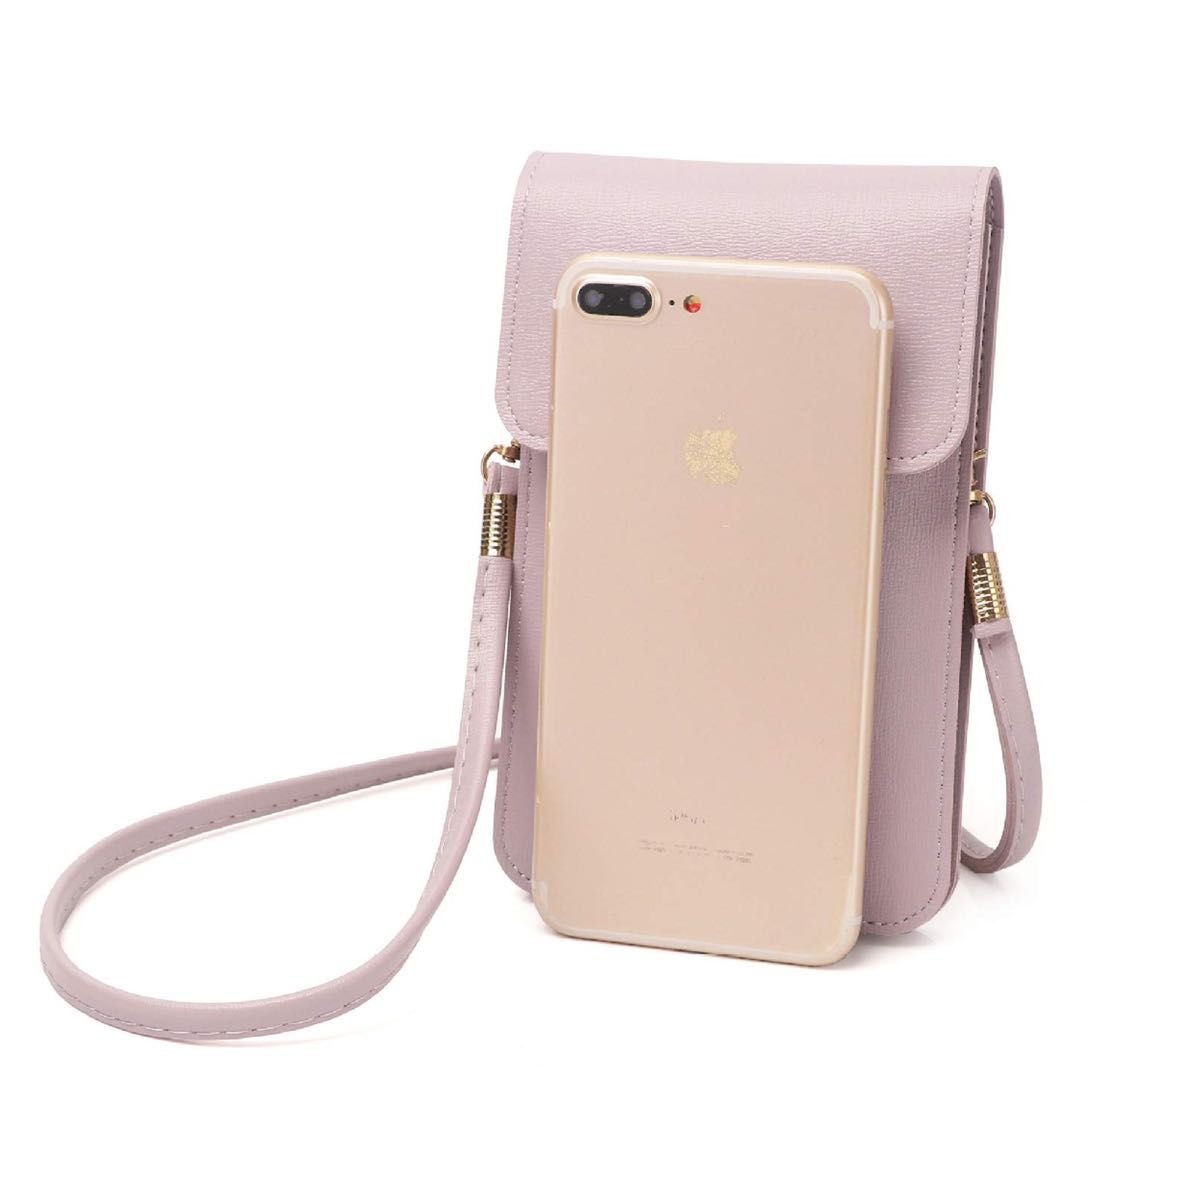 クロスボディバッグPUレザー携帯電話ポーチショルダーハンドバッグ財布 (グレー)